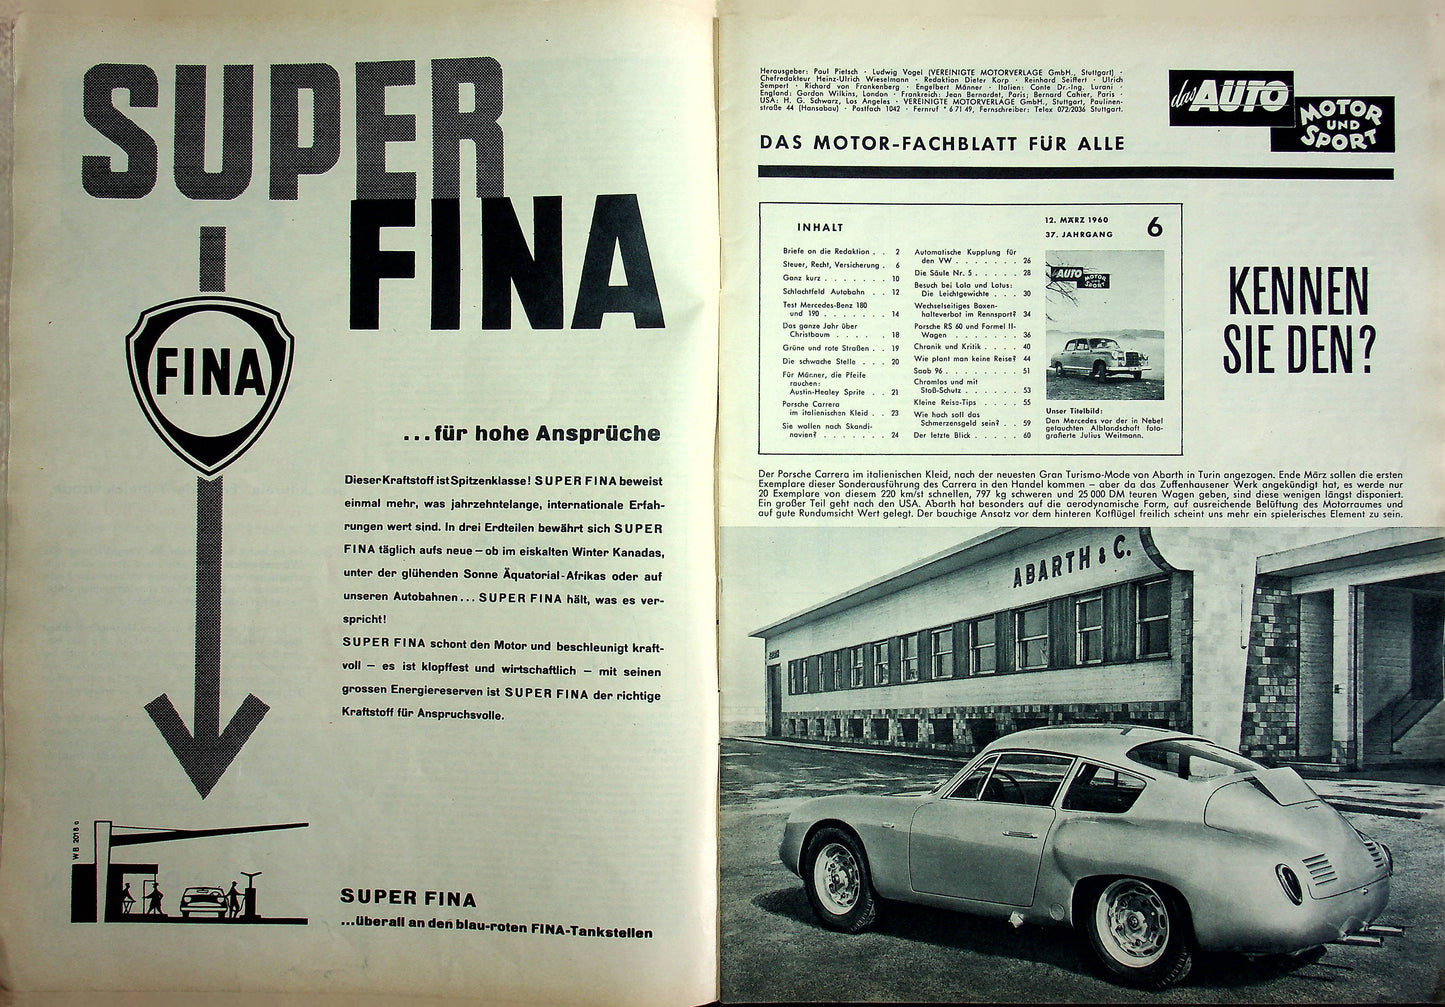 Auto Motor und Sport 06/1960